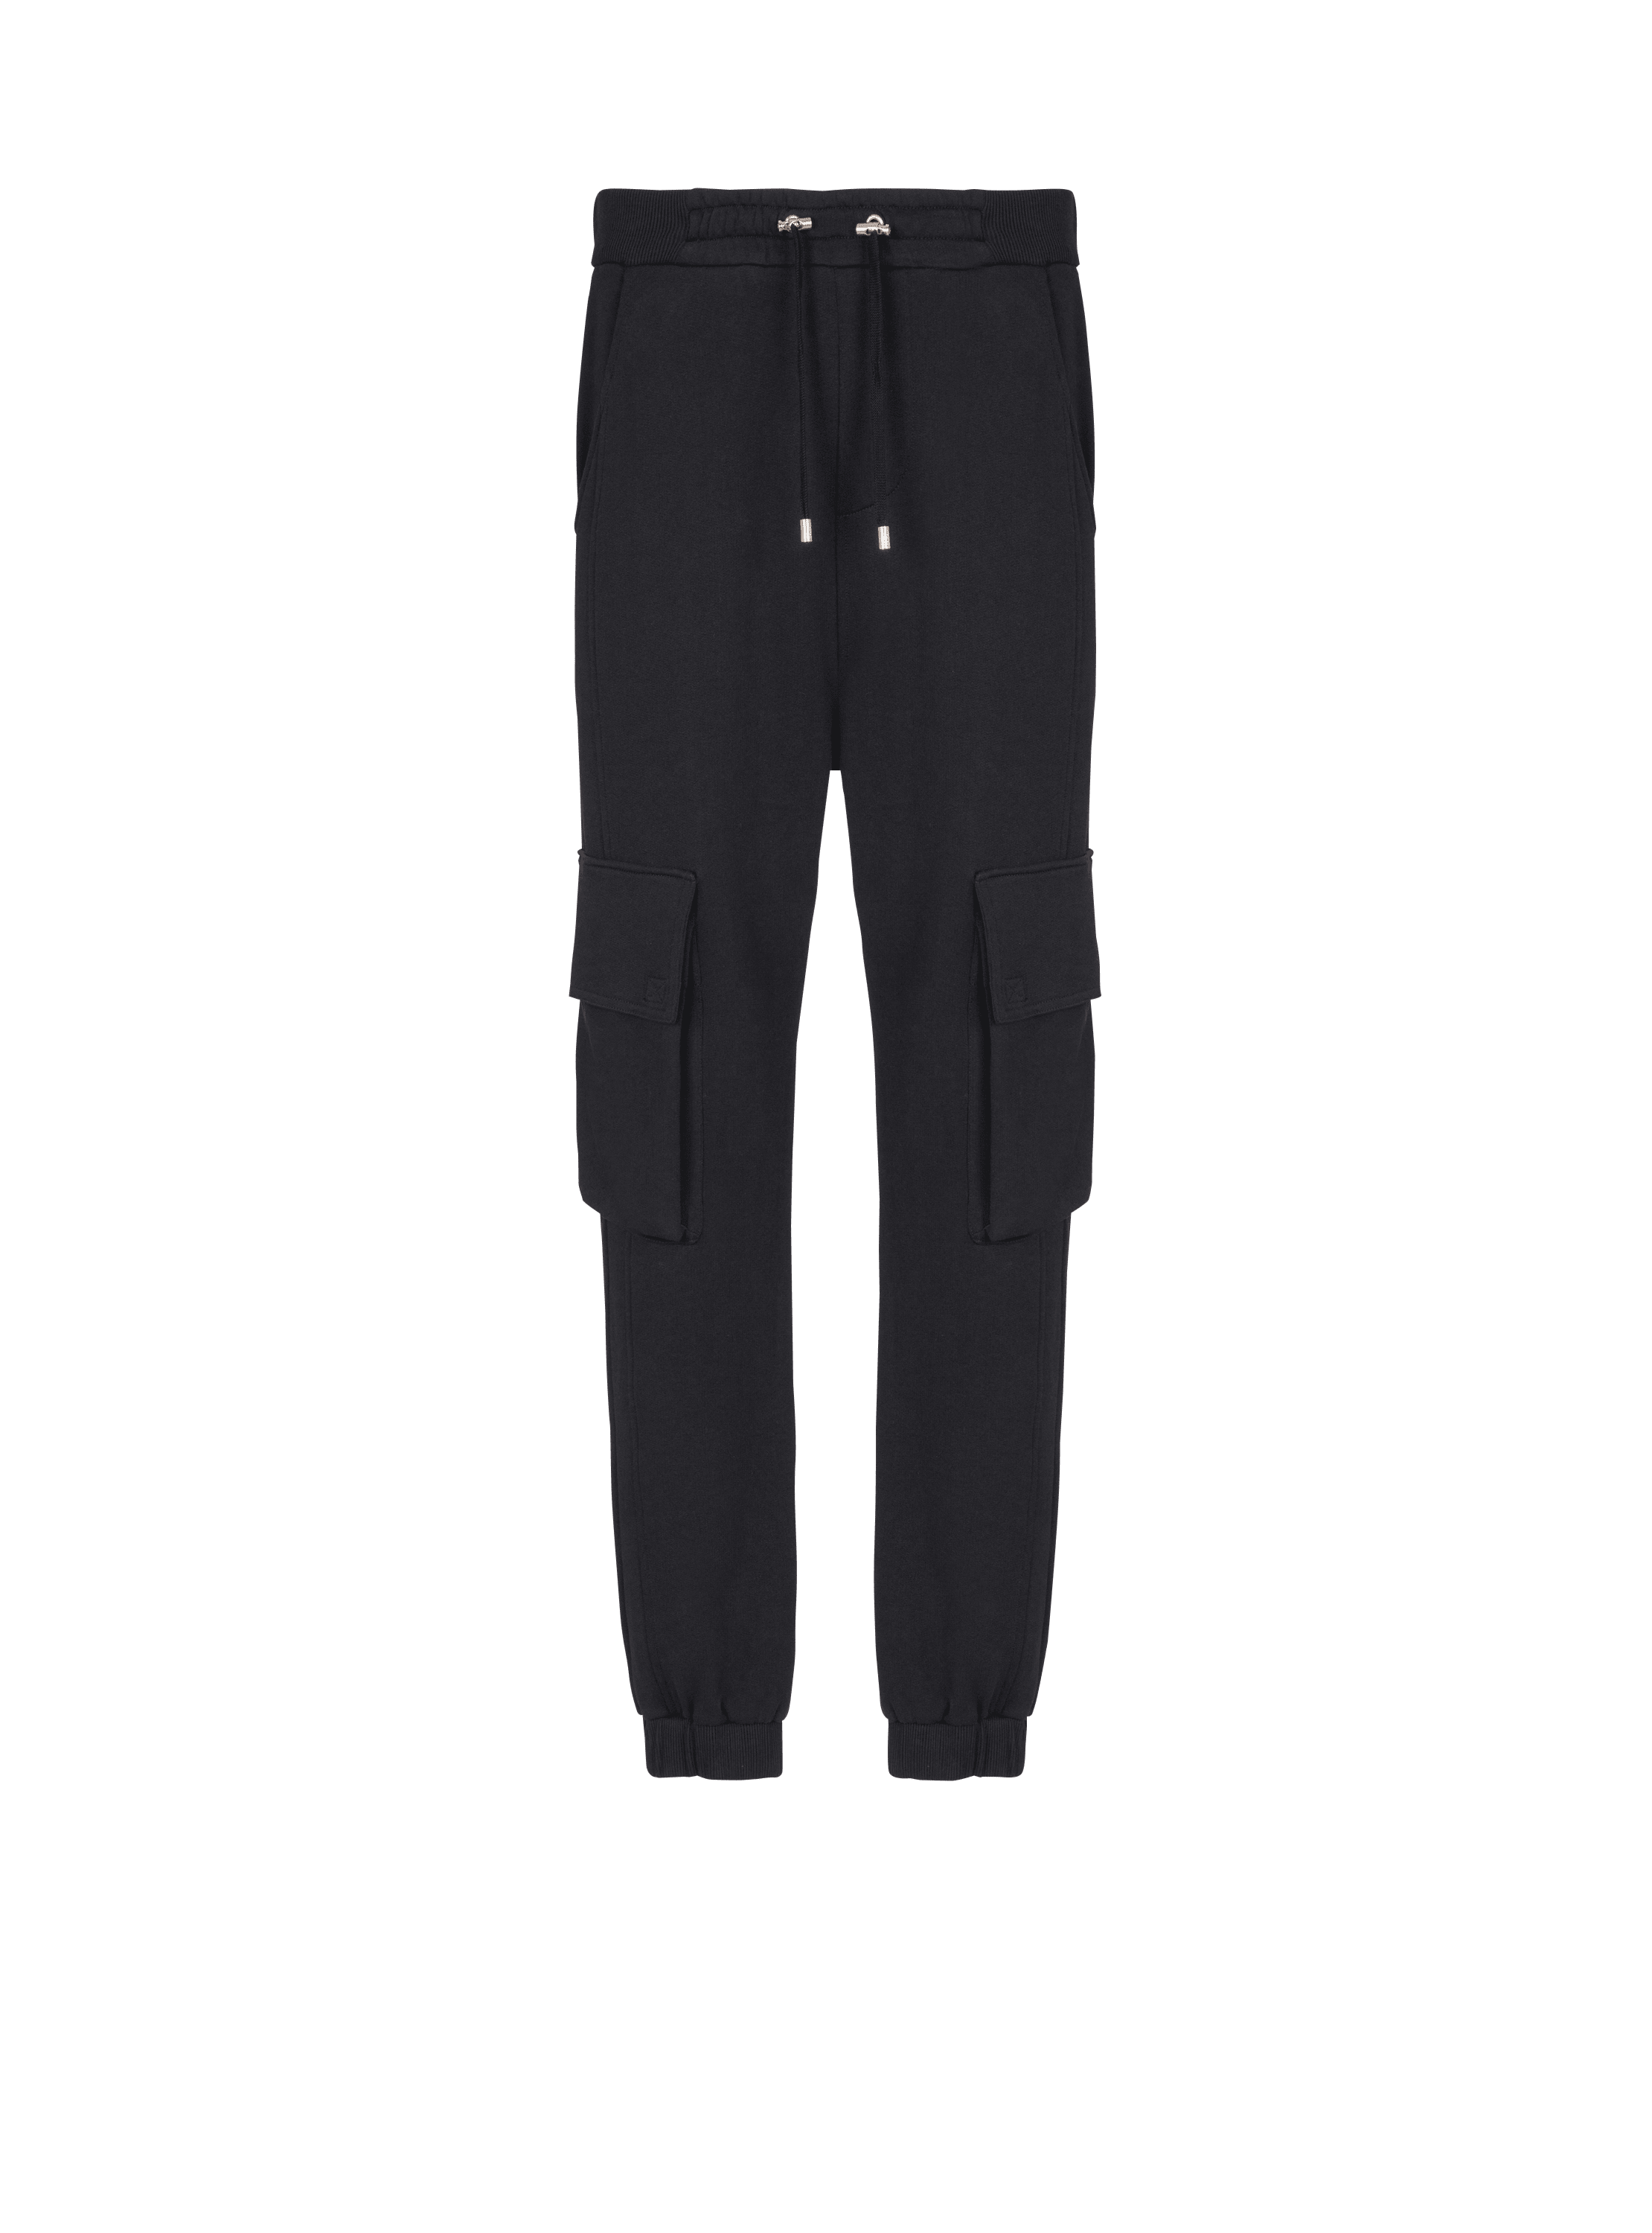 Pantalones de jogging tipo cargo Balmain Paris, negro, hi-res